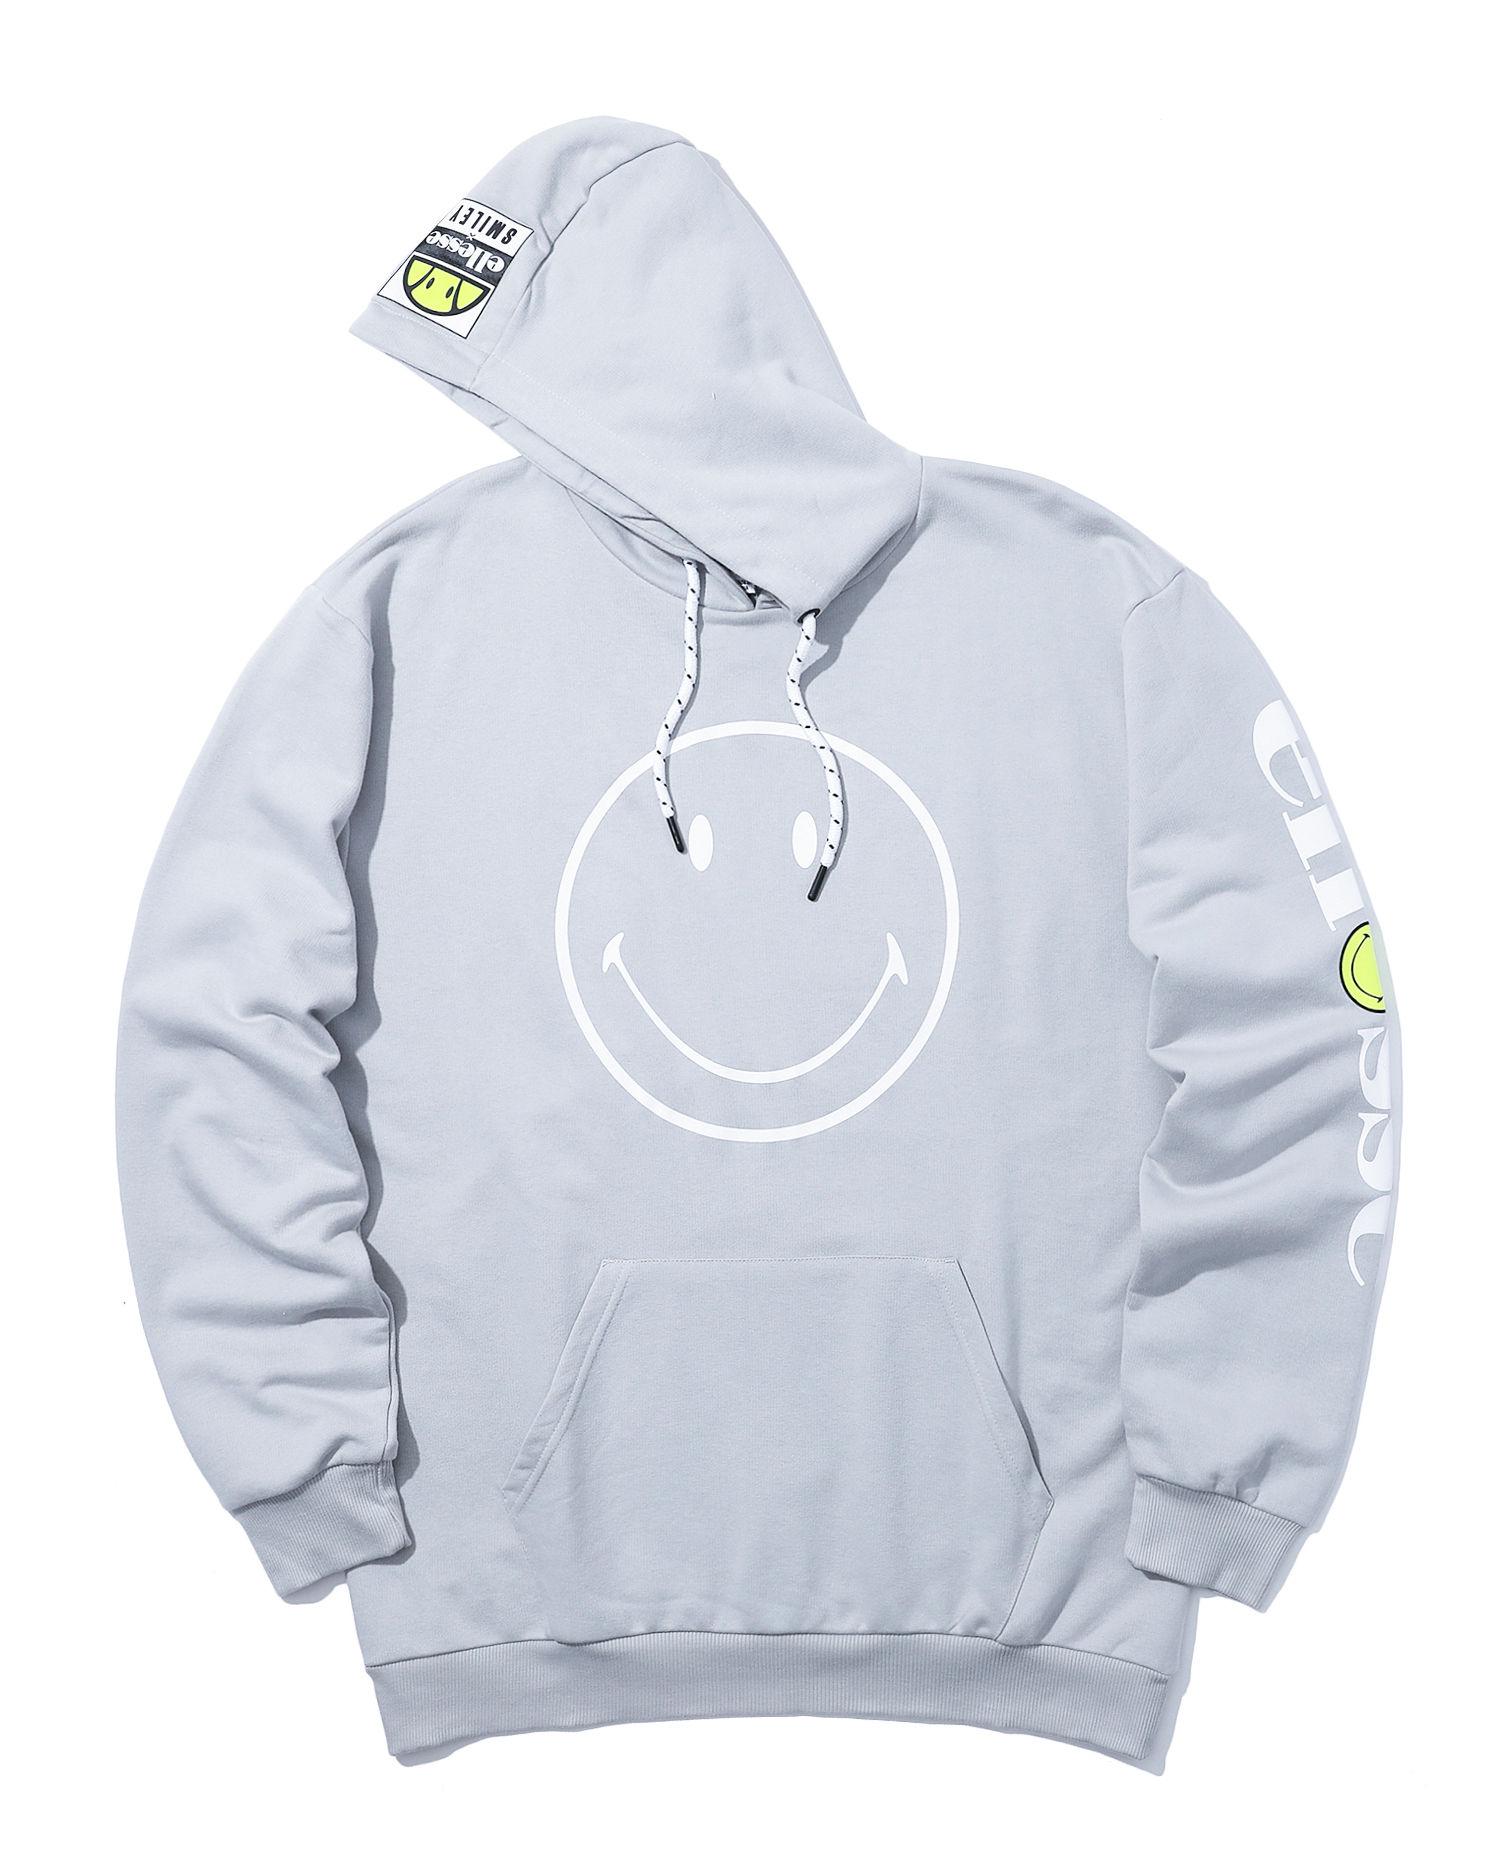 X Smiley logo hoodie by ELLESSE